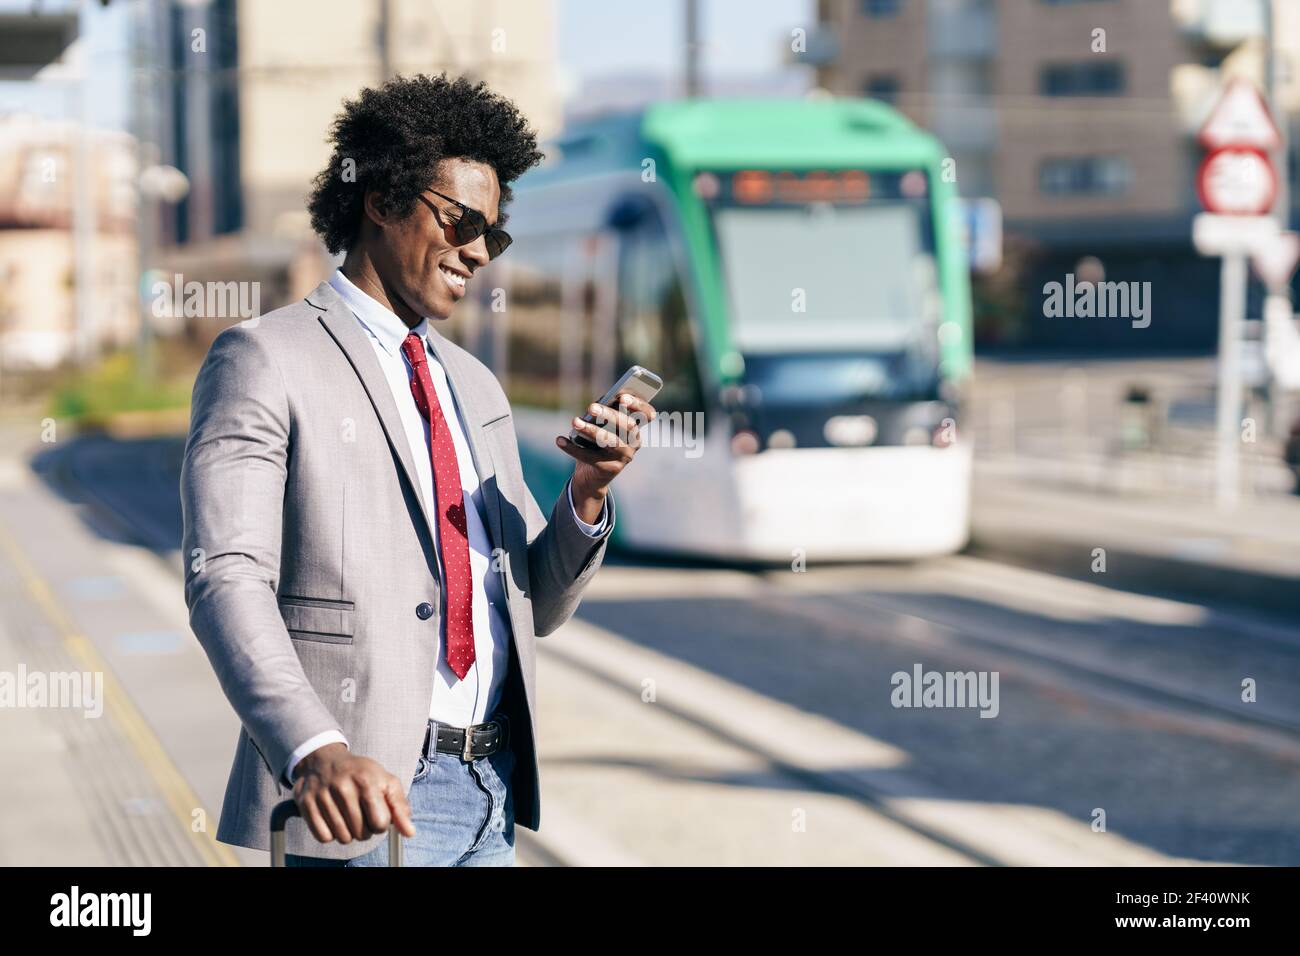 Homme d'affaires noir portant un costume attendant son train sur une gare extérieure. Homme avec cheveux afro.. Homme d'affaires noir vêtu d'un costume qui attend son train Banque D'Images